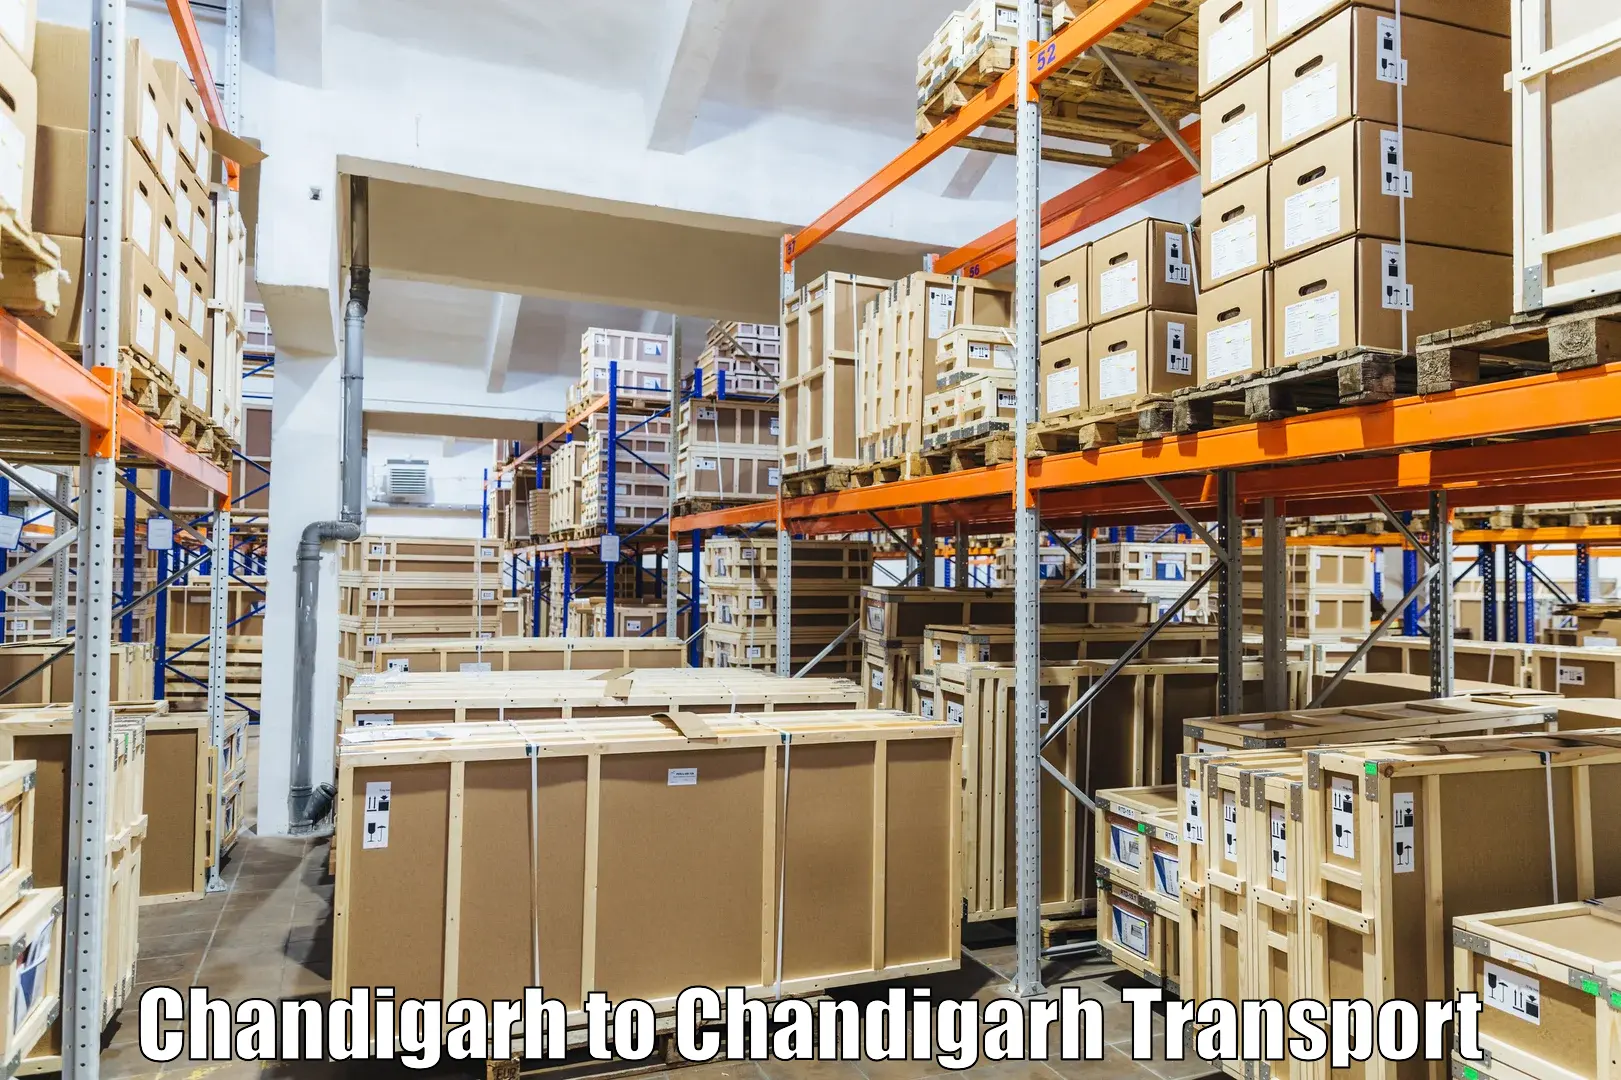 Air cargo transport services Chandigarh to Chandigarh